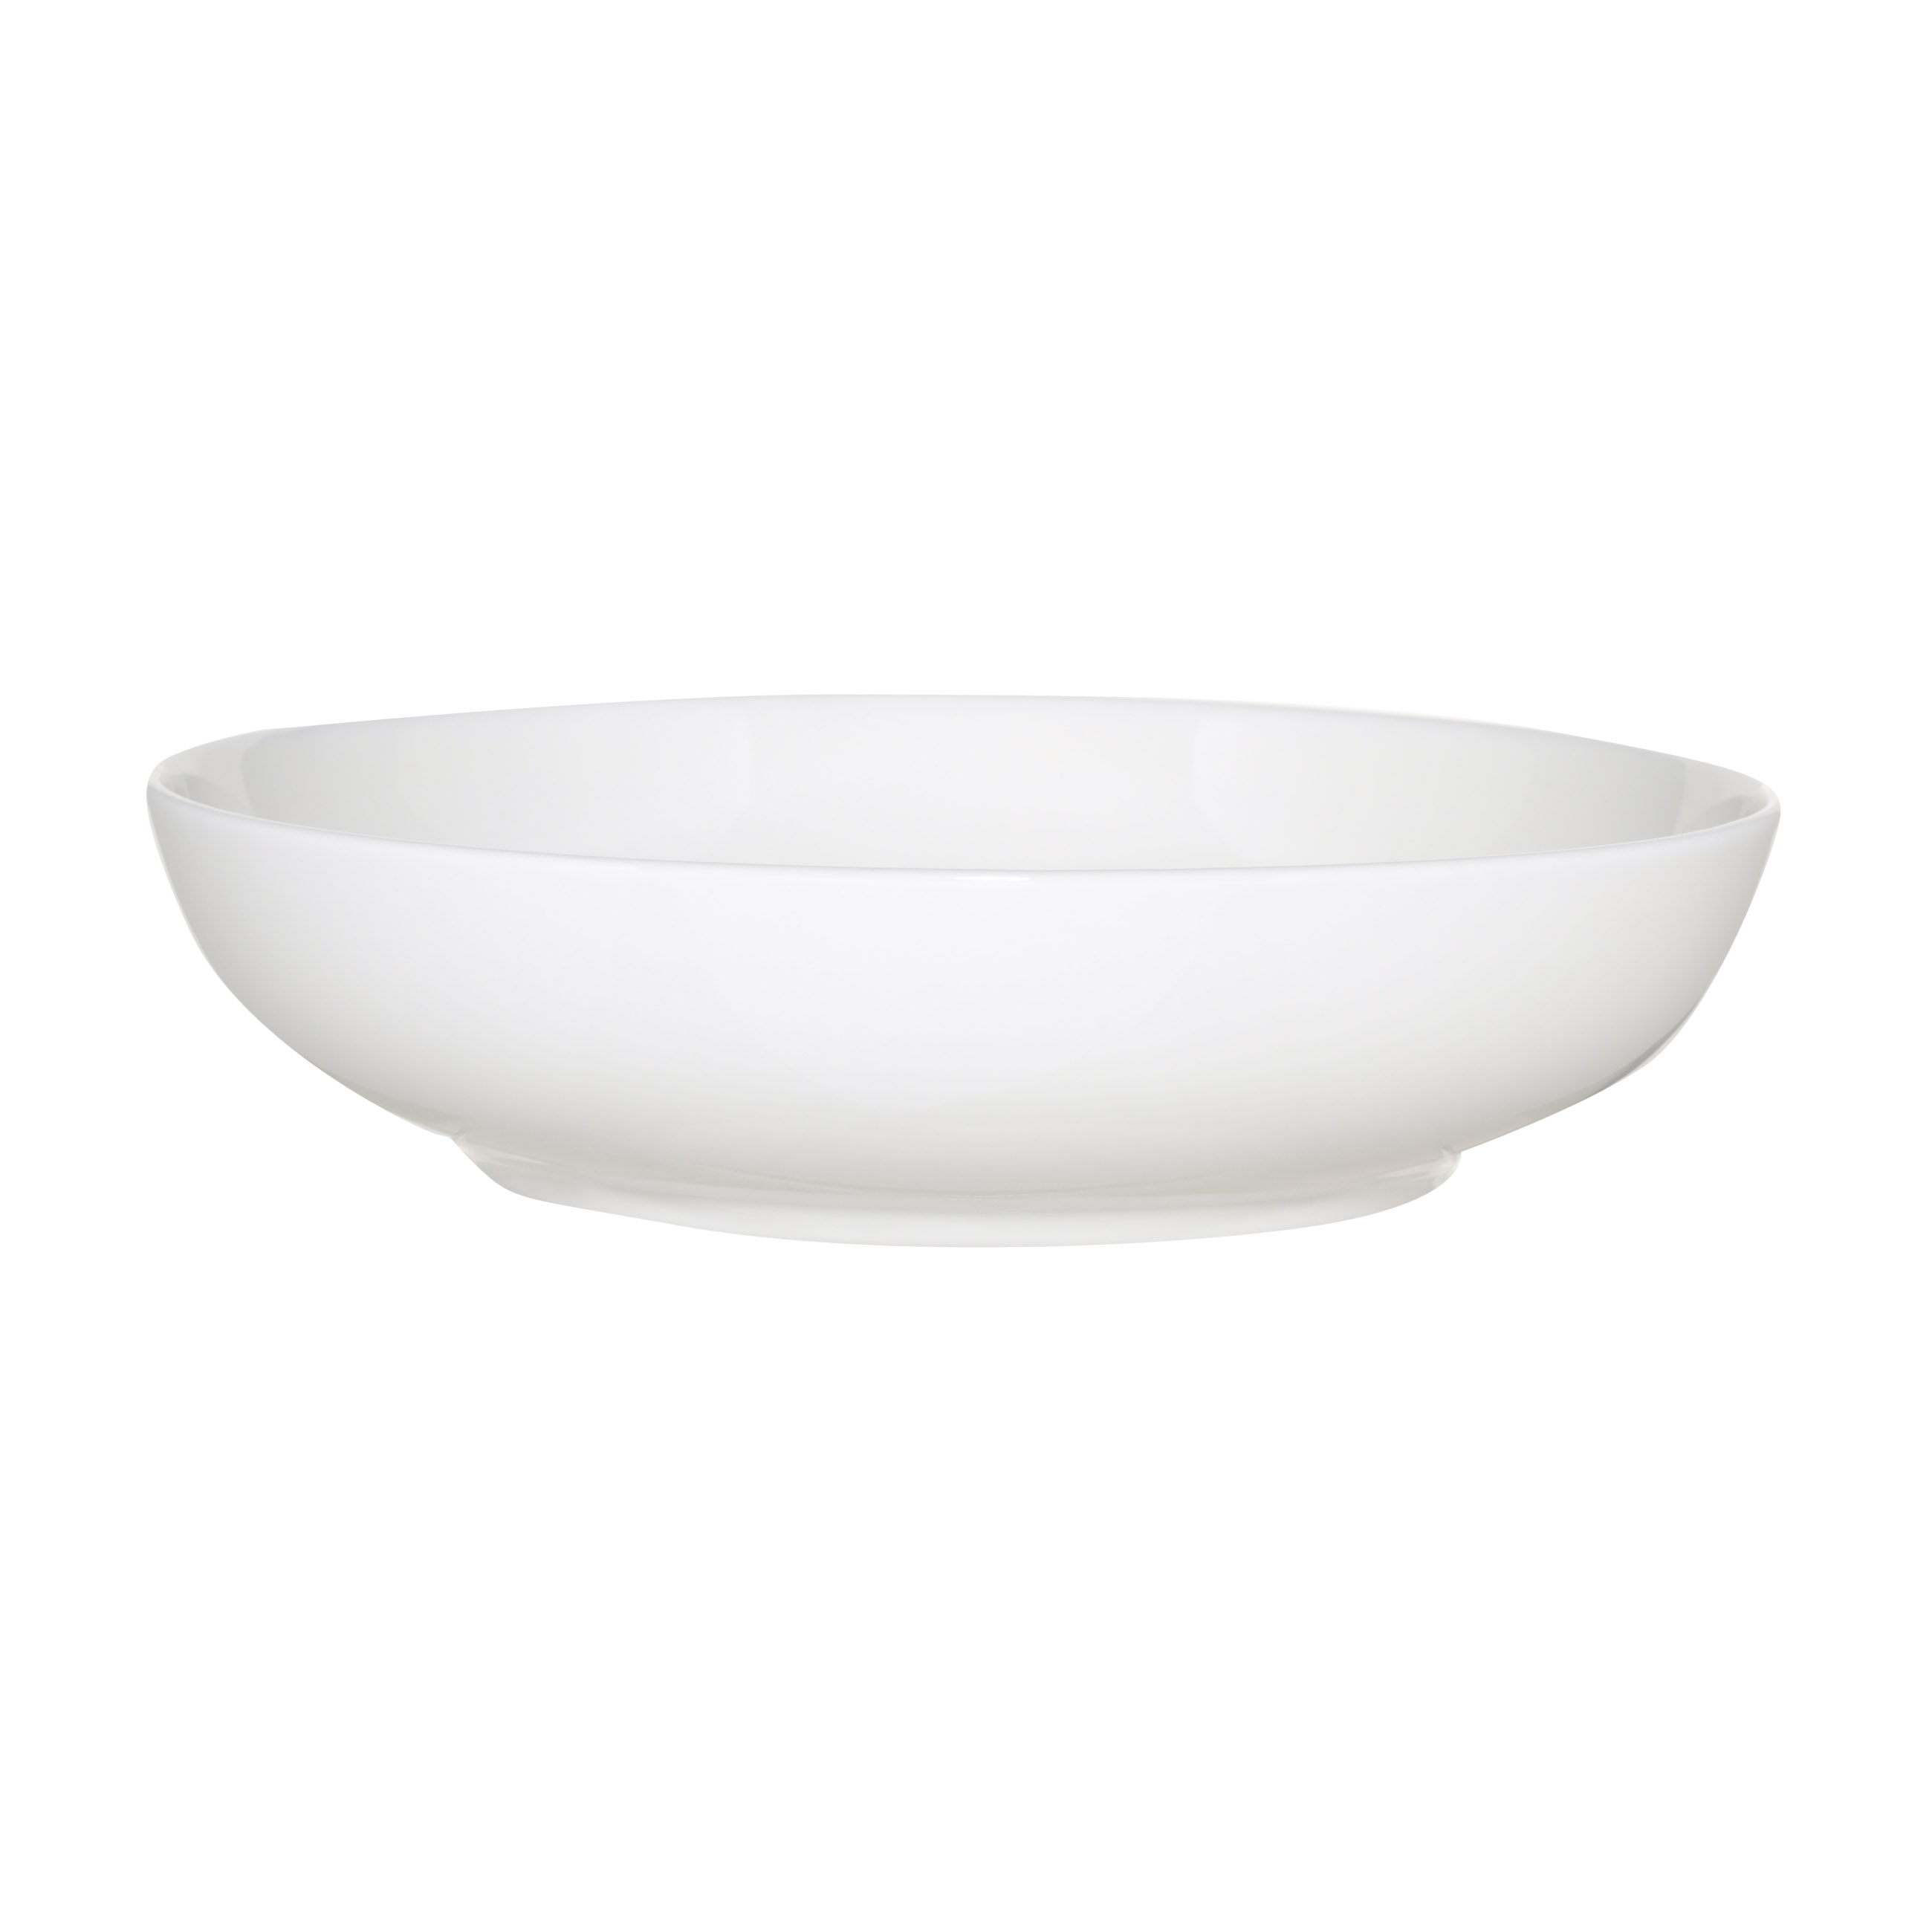 Soup plate, 20 cm, 2 pcs, porcelain F, white, Ideal white изображение № 2